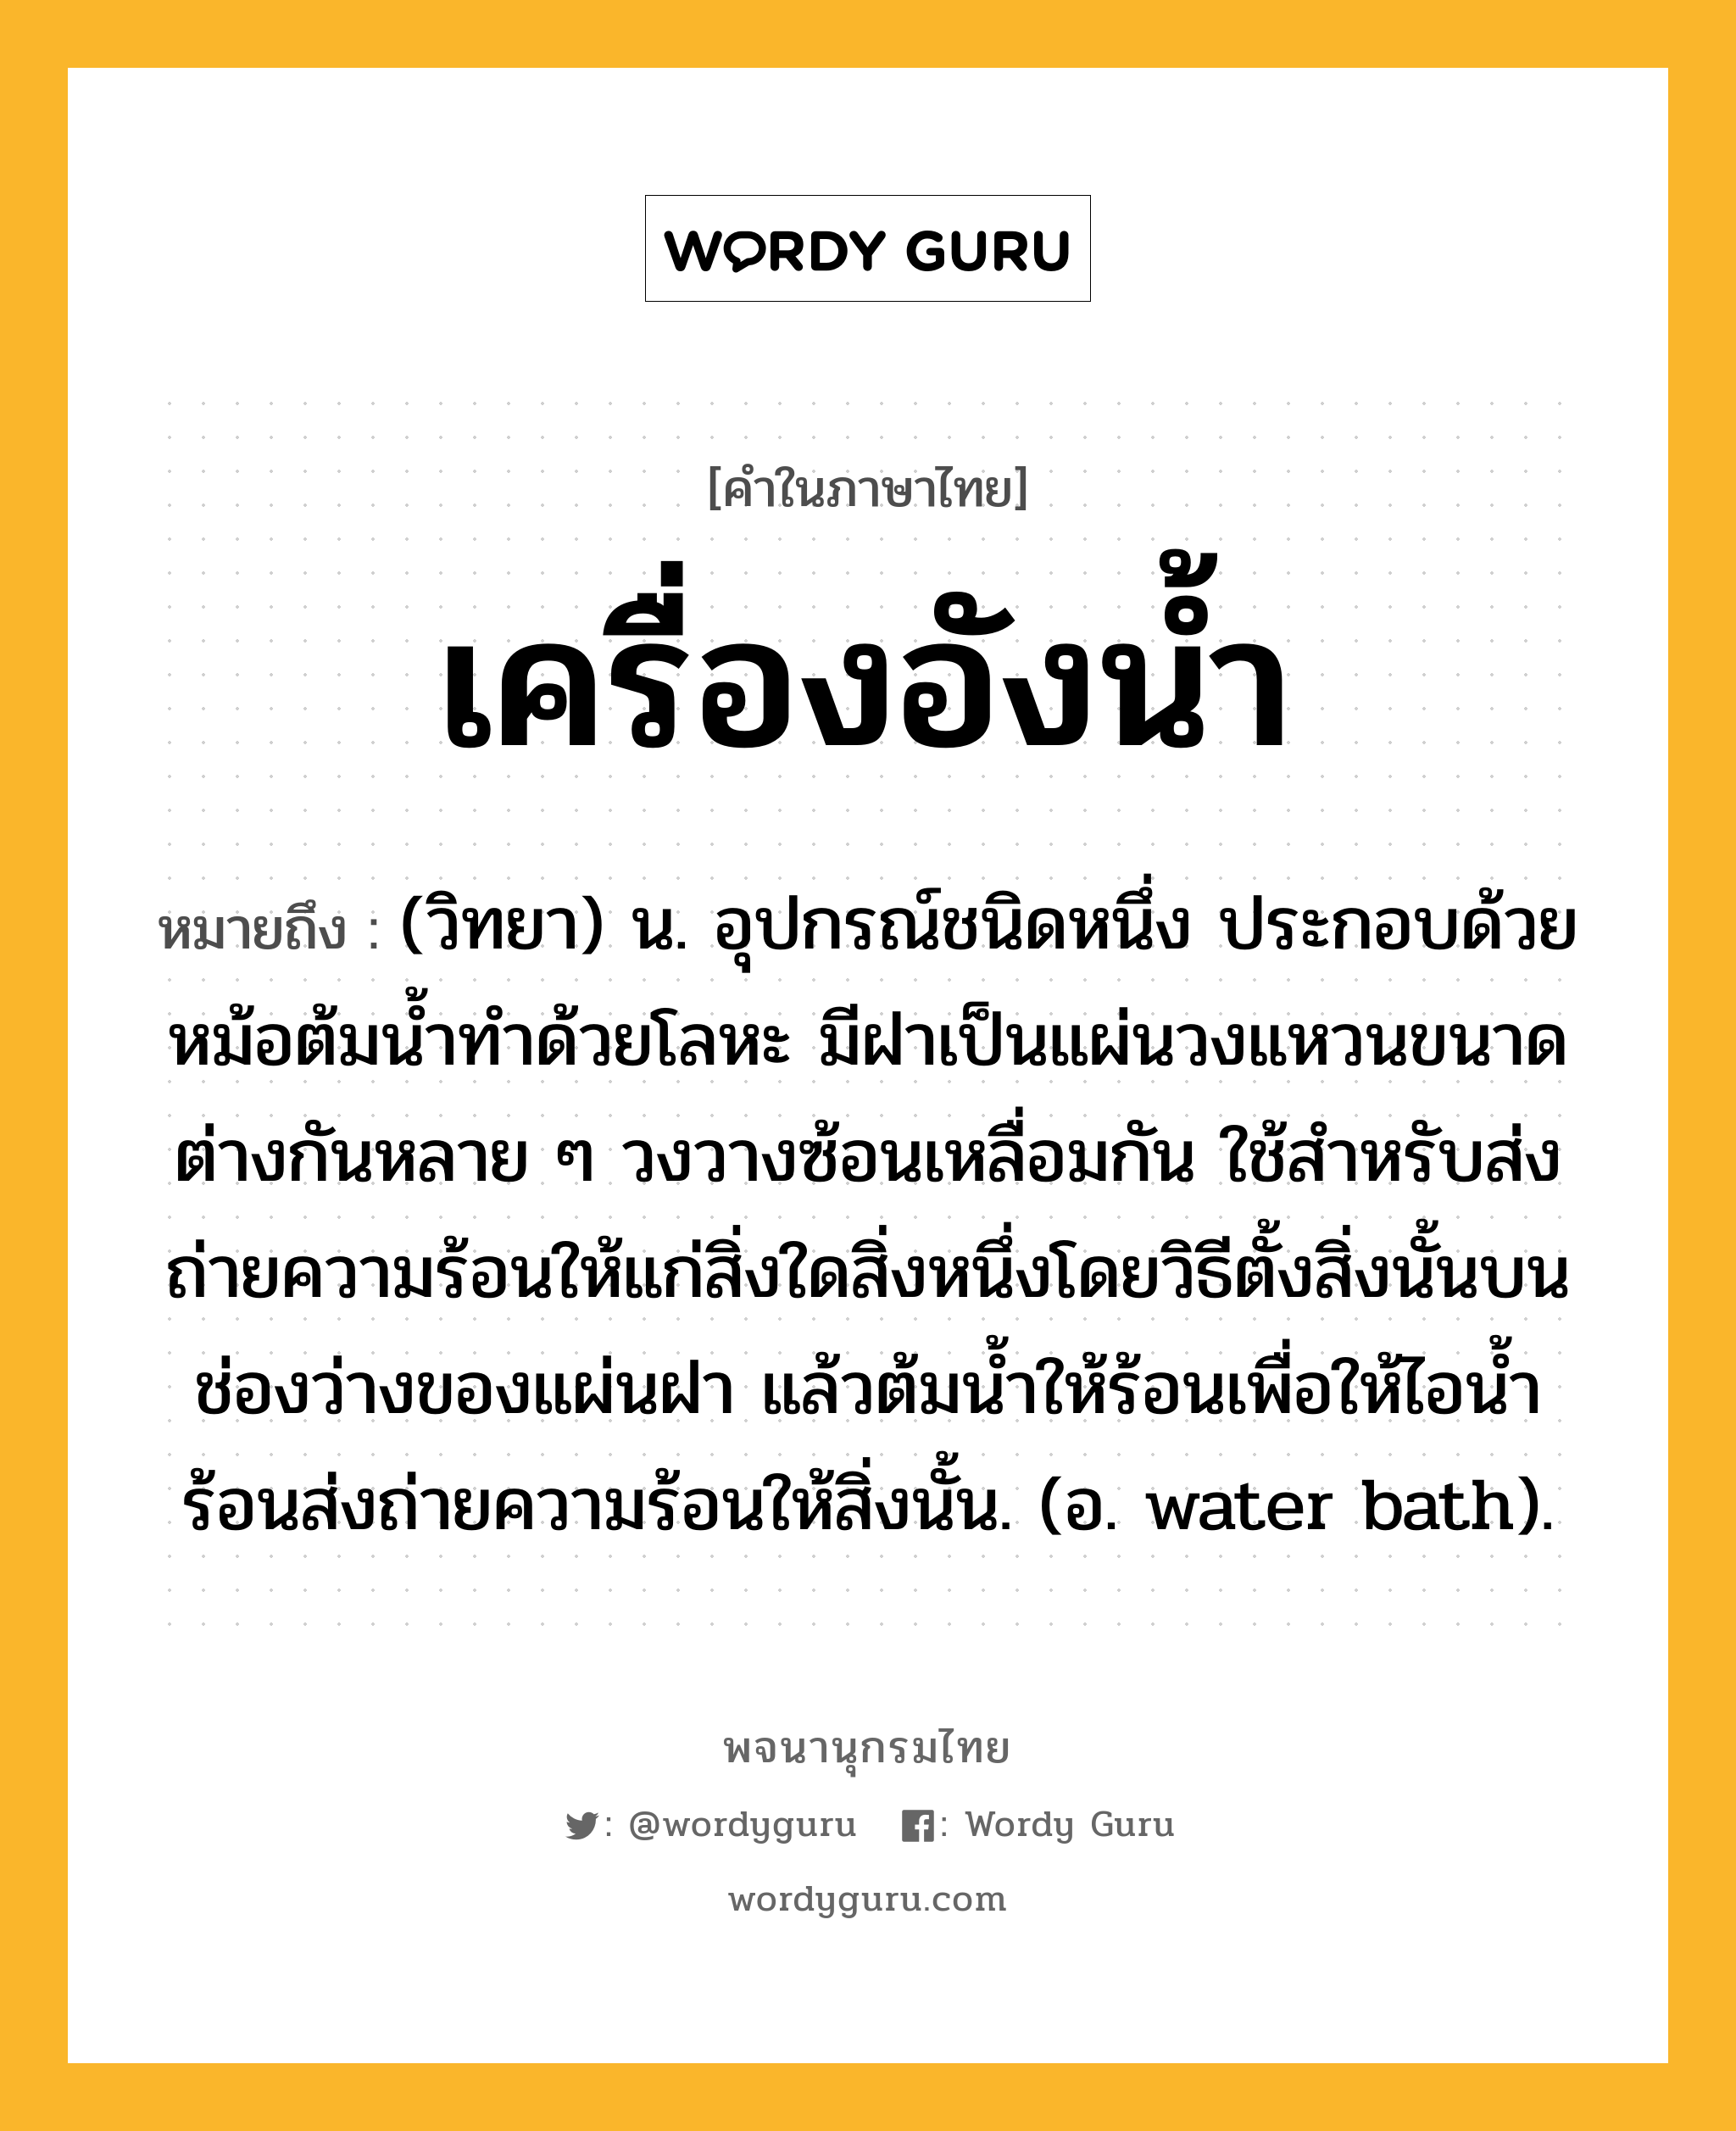 เครื่องอังน้ำ ความหมาย หมายถึงอะไร?, คำในภาษาไทย เครื่องอังน้ำ หมายถึง (วิทยา) น. อุปกรณ์ชนิดหนึ่ง ประกอบด้วยหม้อต้มนํ้าทําด้วยโลหะ มีฝาเป็นแผ่นวงแหวนขนาดต่างกันหลาย ๆ วงวางซ้อนเหลื่อมกัน ใช้สําหรับส่งถ่ายความร้อนให้แก่สิ่งใดสิ่งหนึ่งโดยวิธีตั้งสิ่งนั้นบนช่องว่างของแผ่นฝา แล้วต้มนํ้าให้ร้อนเพื่อให้ไอนํ้าร้อนส่งถ่ายความร้อนให้สิ่งนั้น. (อ. water bath).